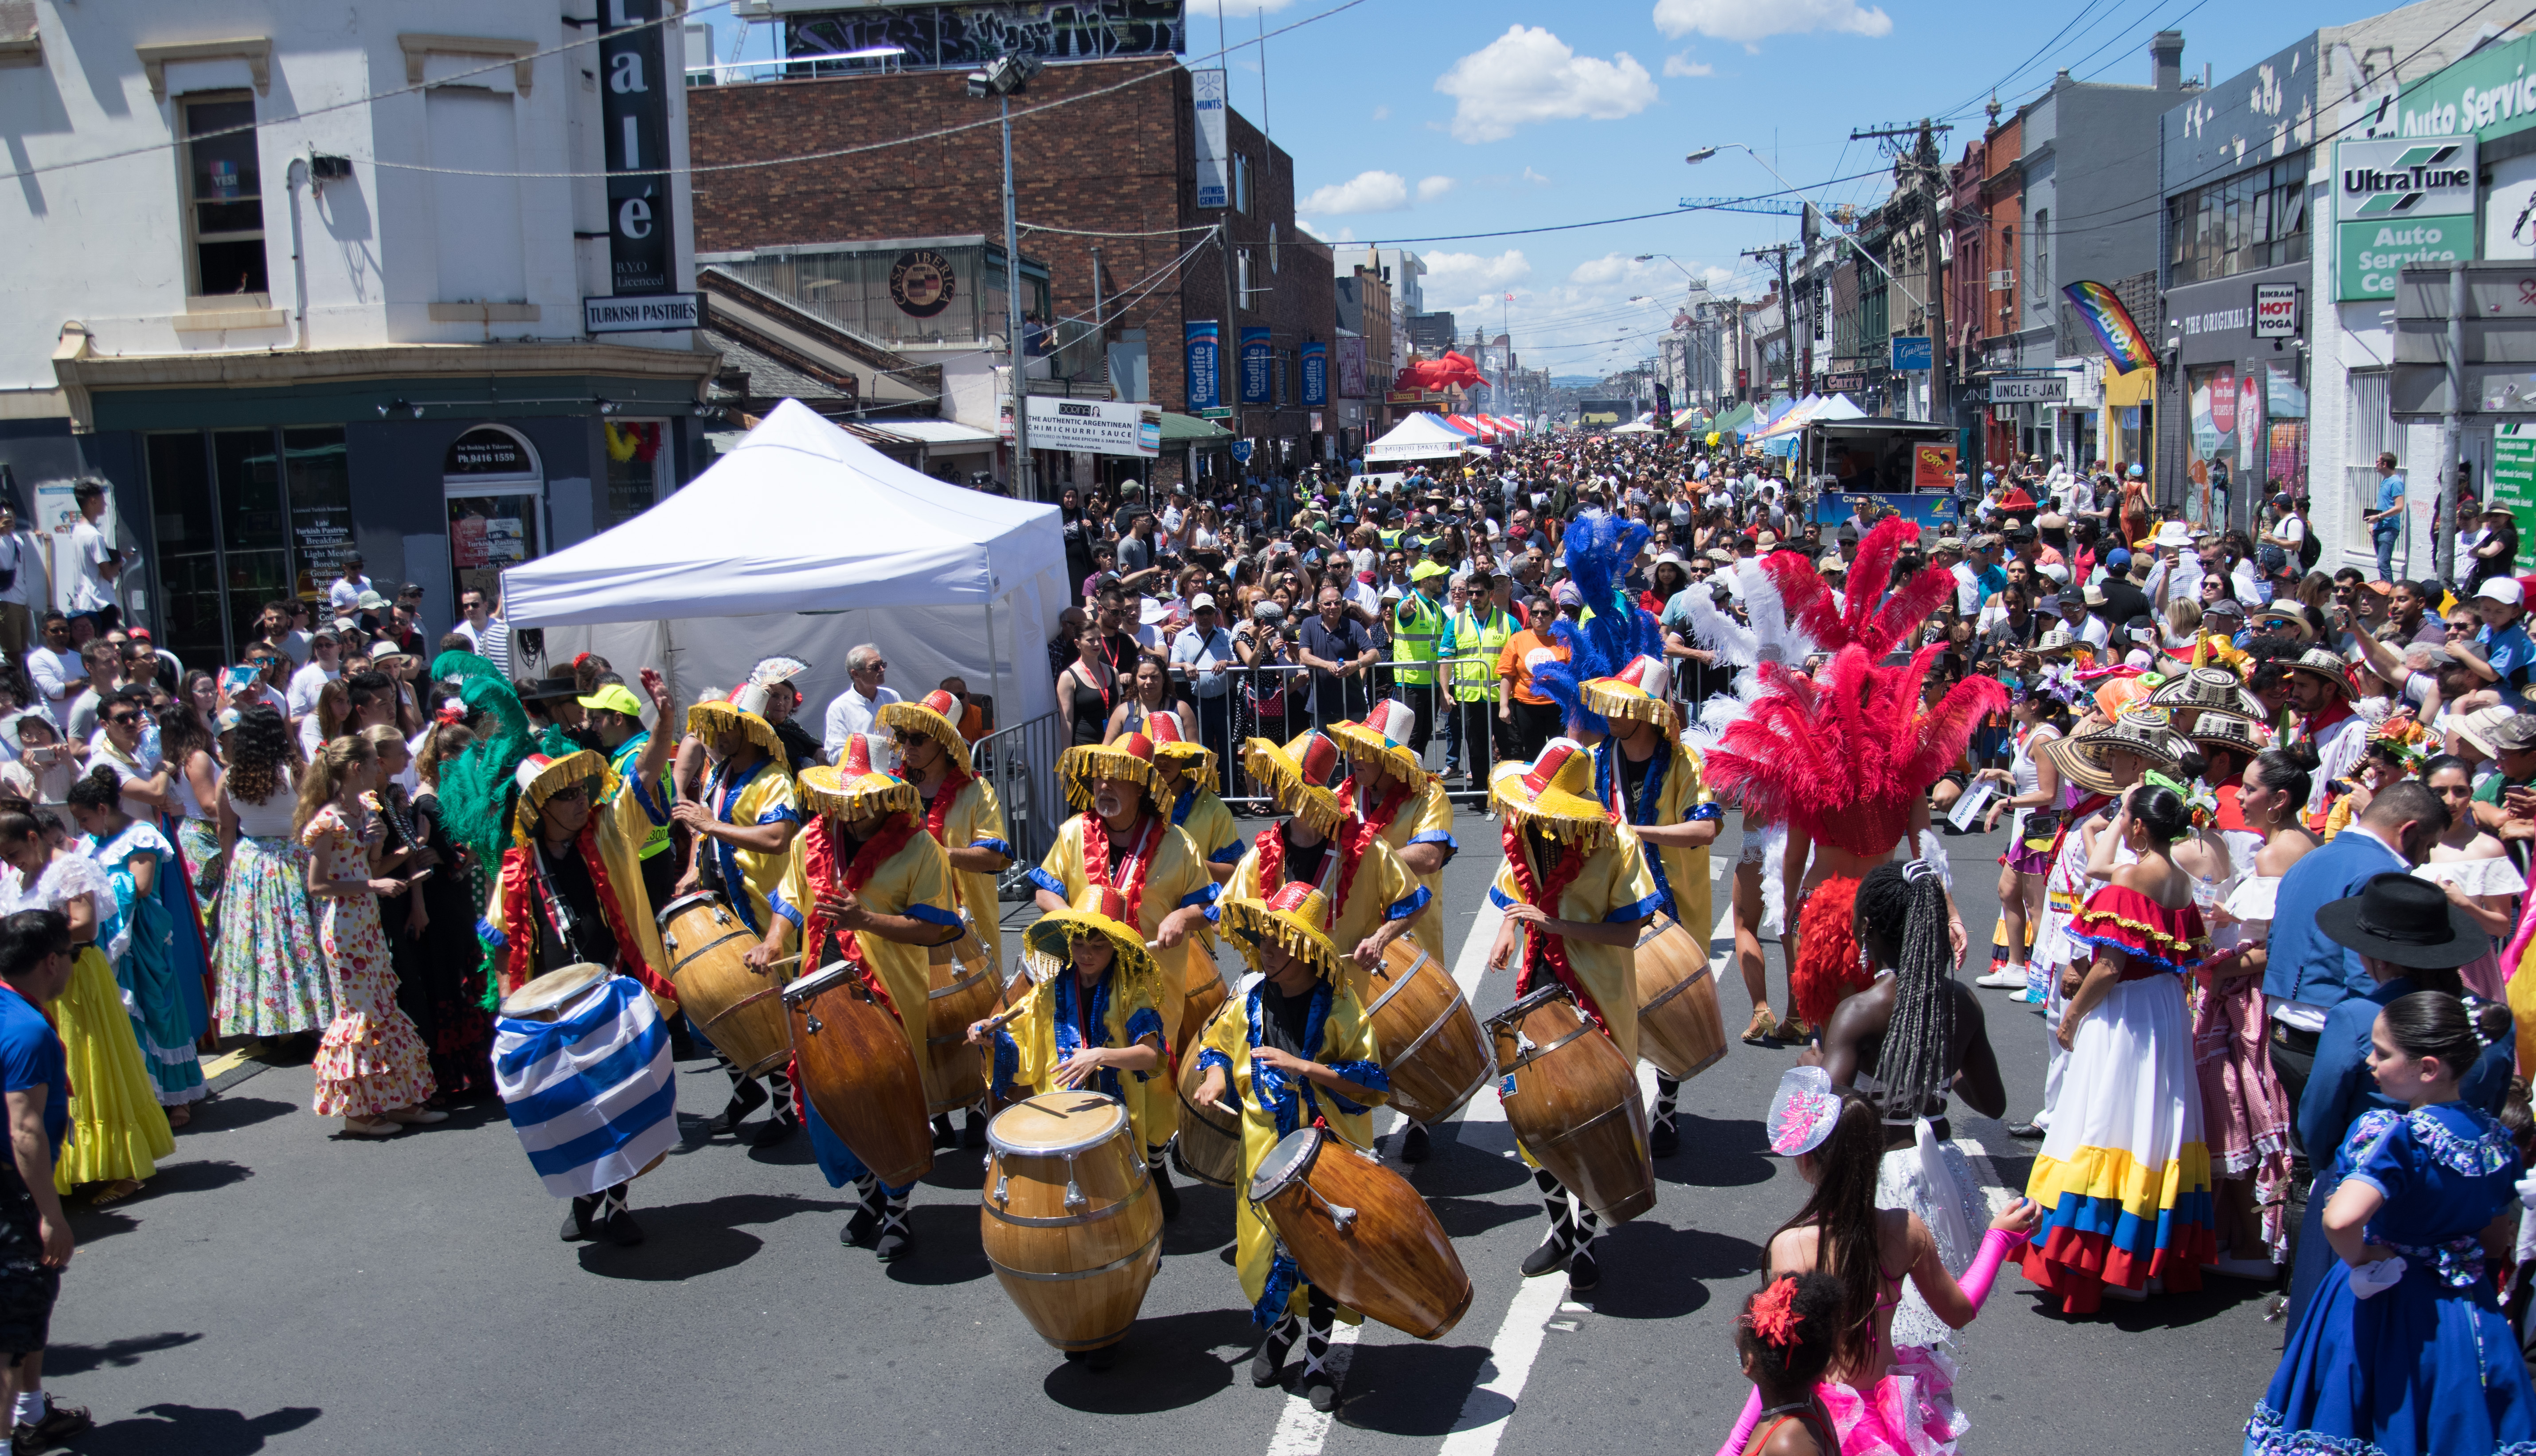 Johnston Street Fiesta